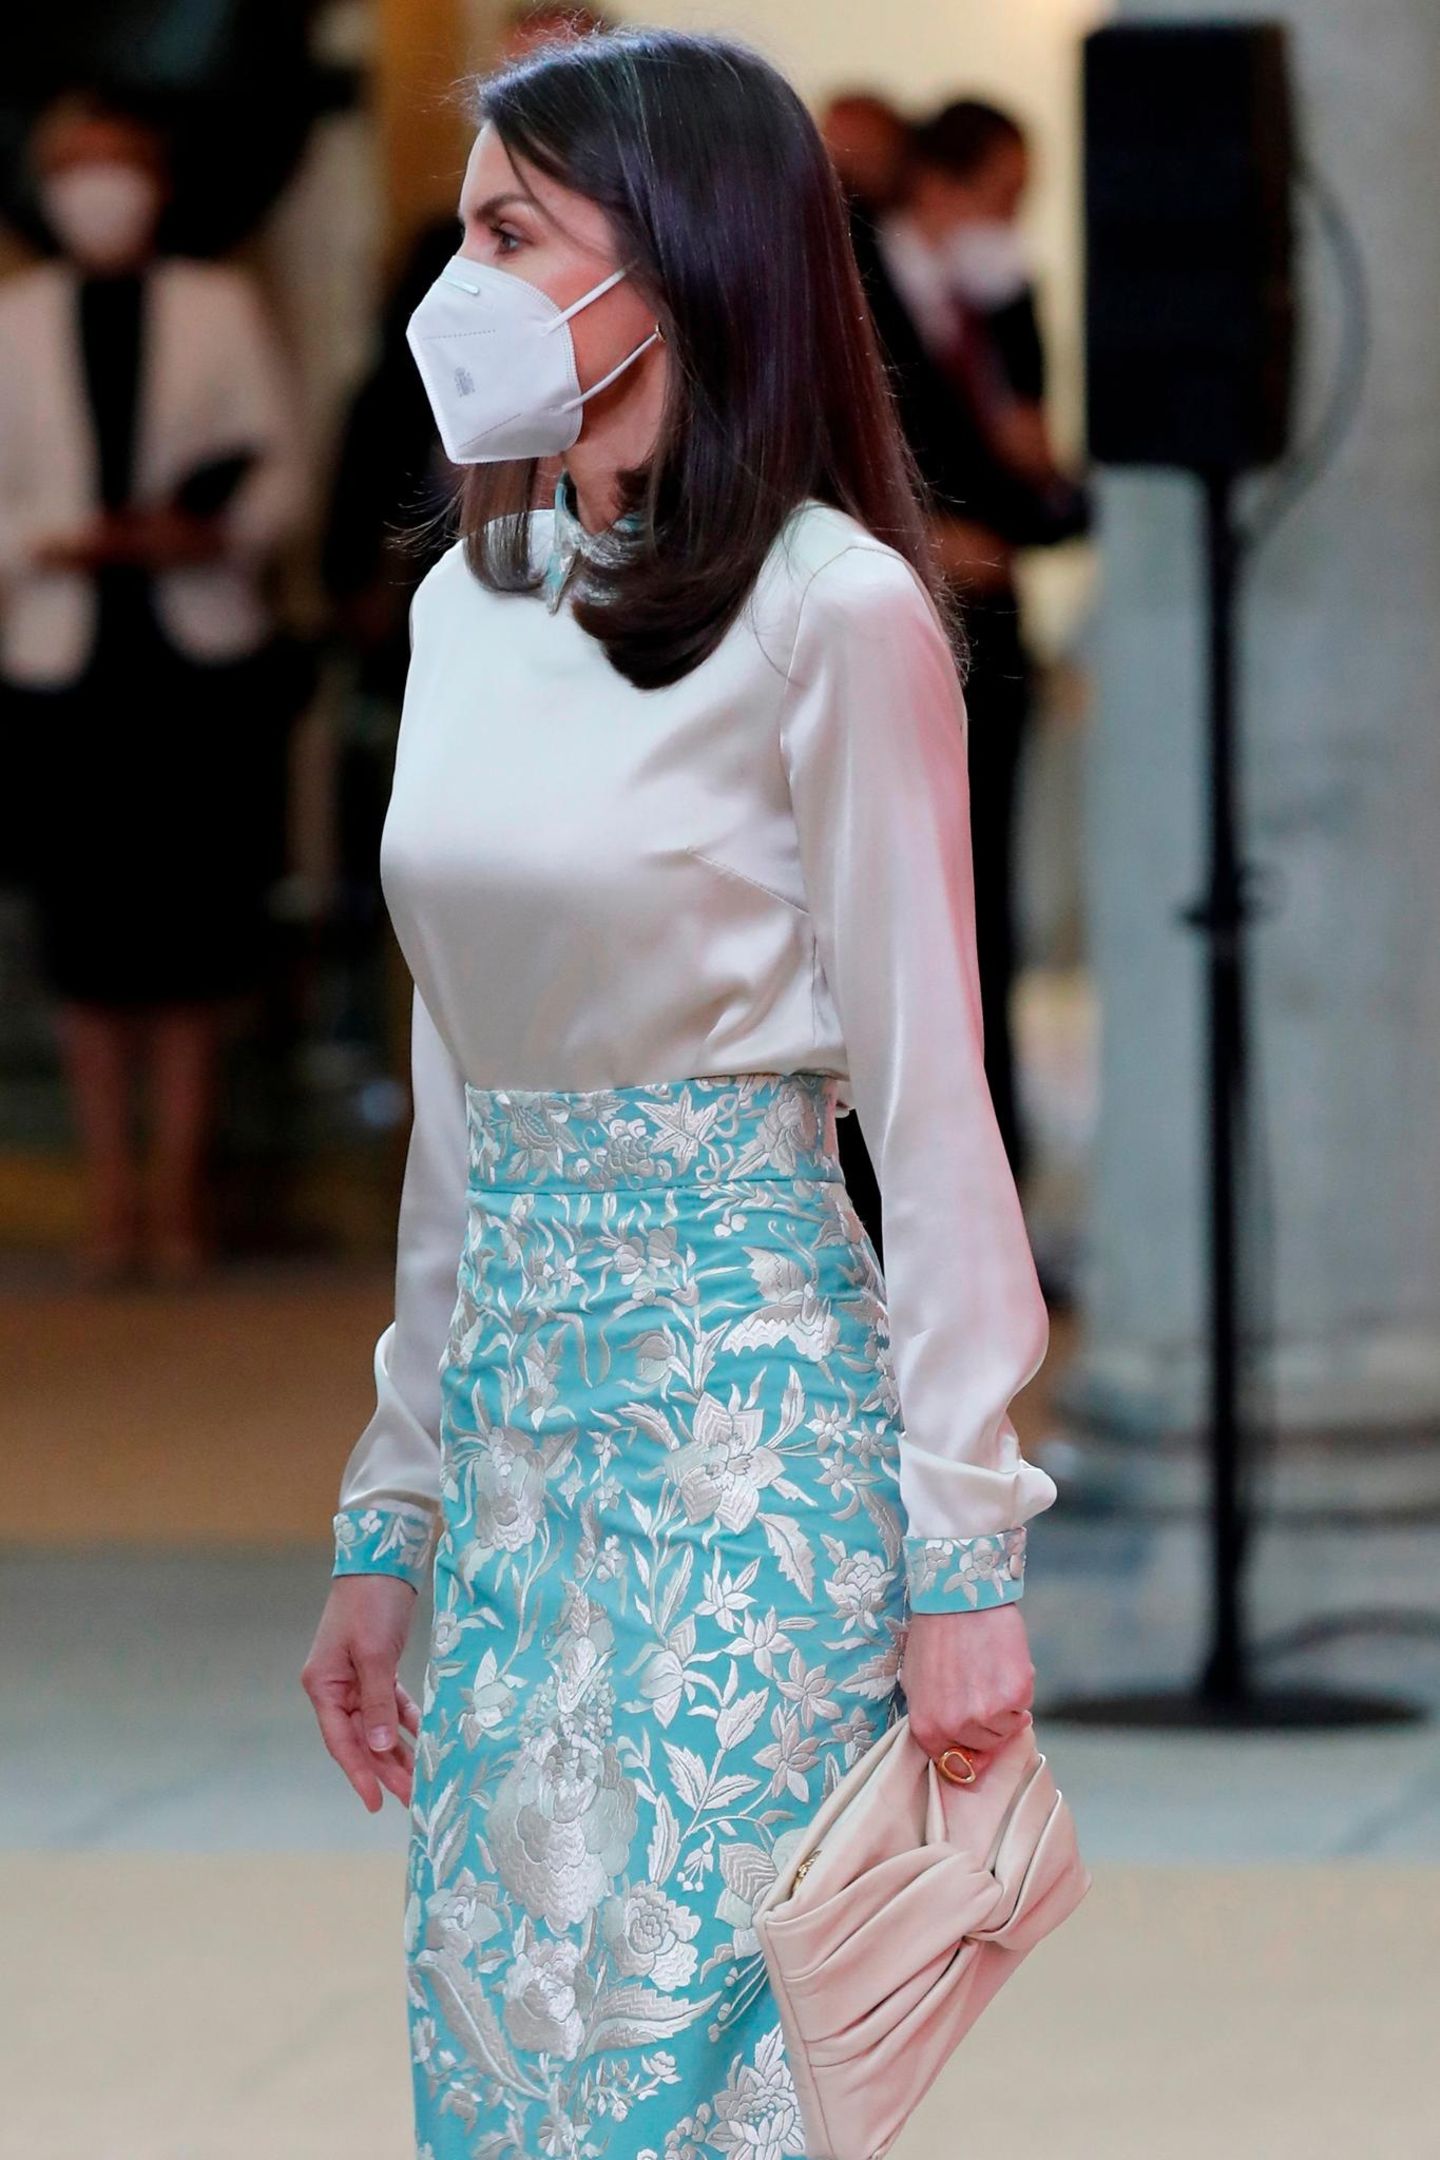 In Kragen und Bündchen der cremefarbenen Bluse wird das Muster wieder aufgegriffen. Dazu trägt Königin Letizia eine beigefarbene Clutch.